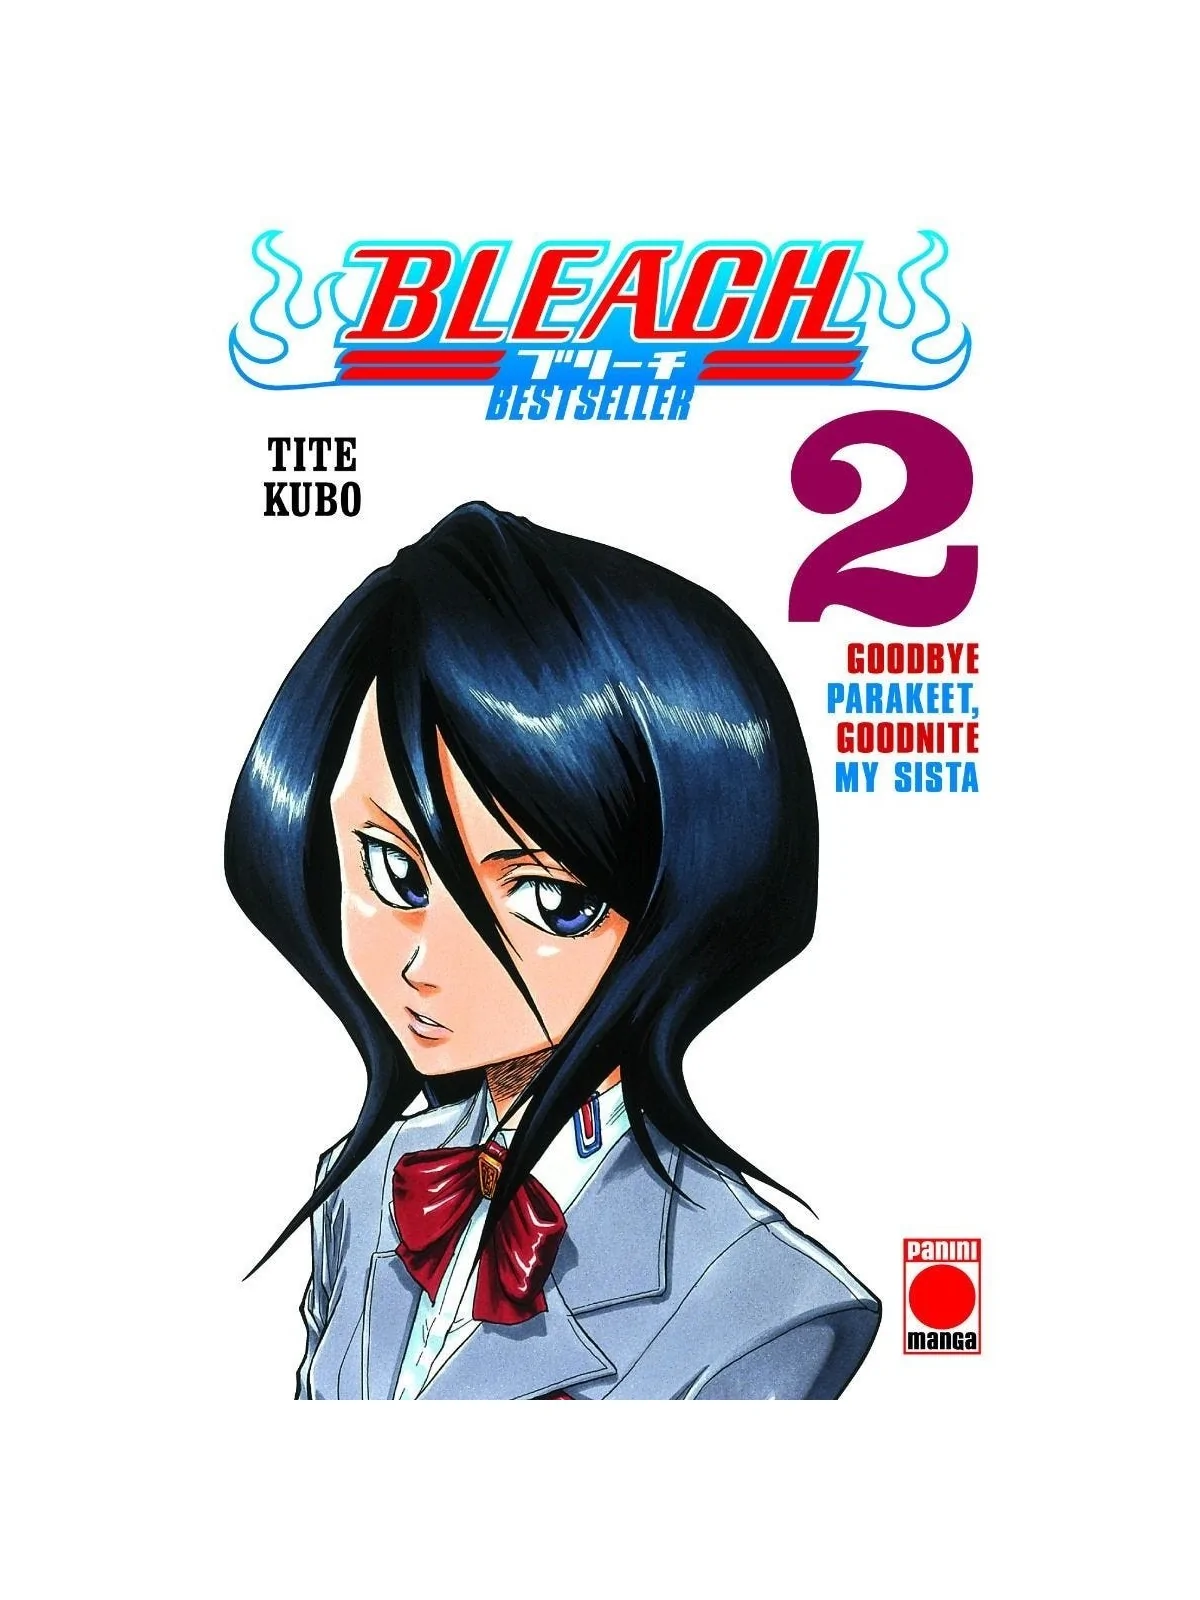 Comprar Bleach: Bestseller 02 barato al mejor precio 5,70 € de Panini 